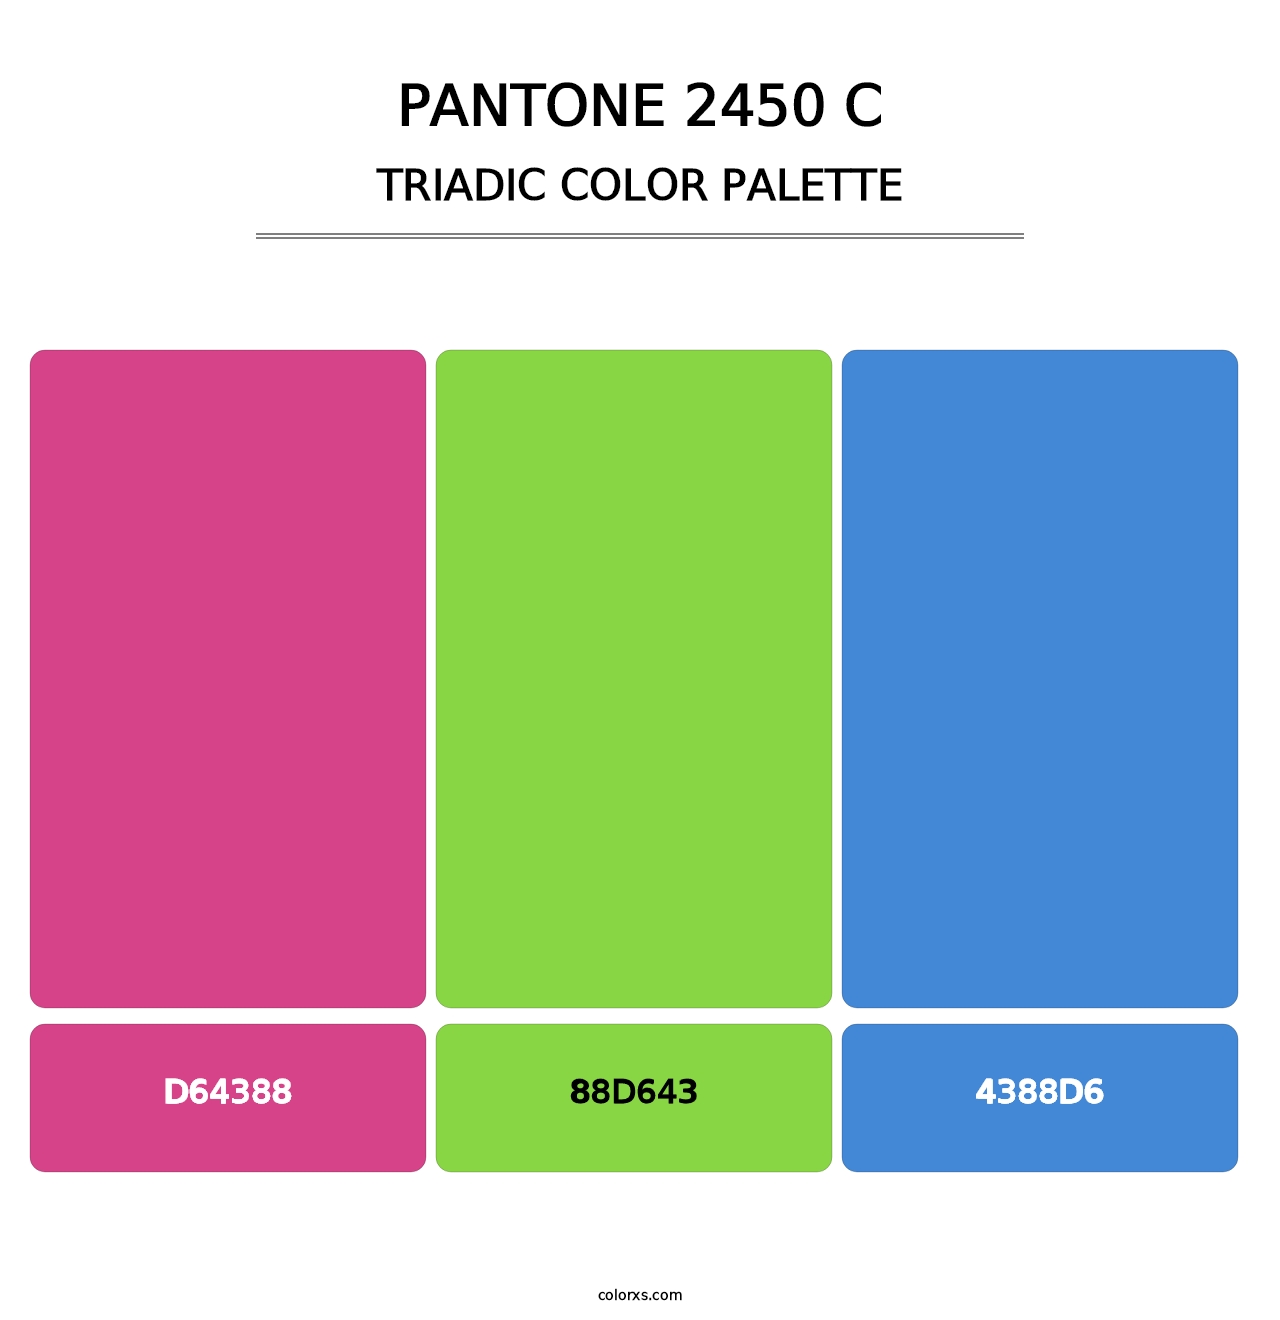 PANTONE 2450 C - Triadic Color Palette